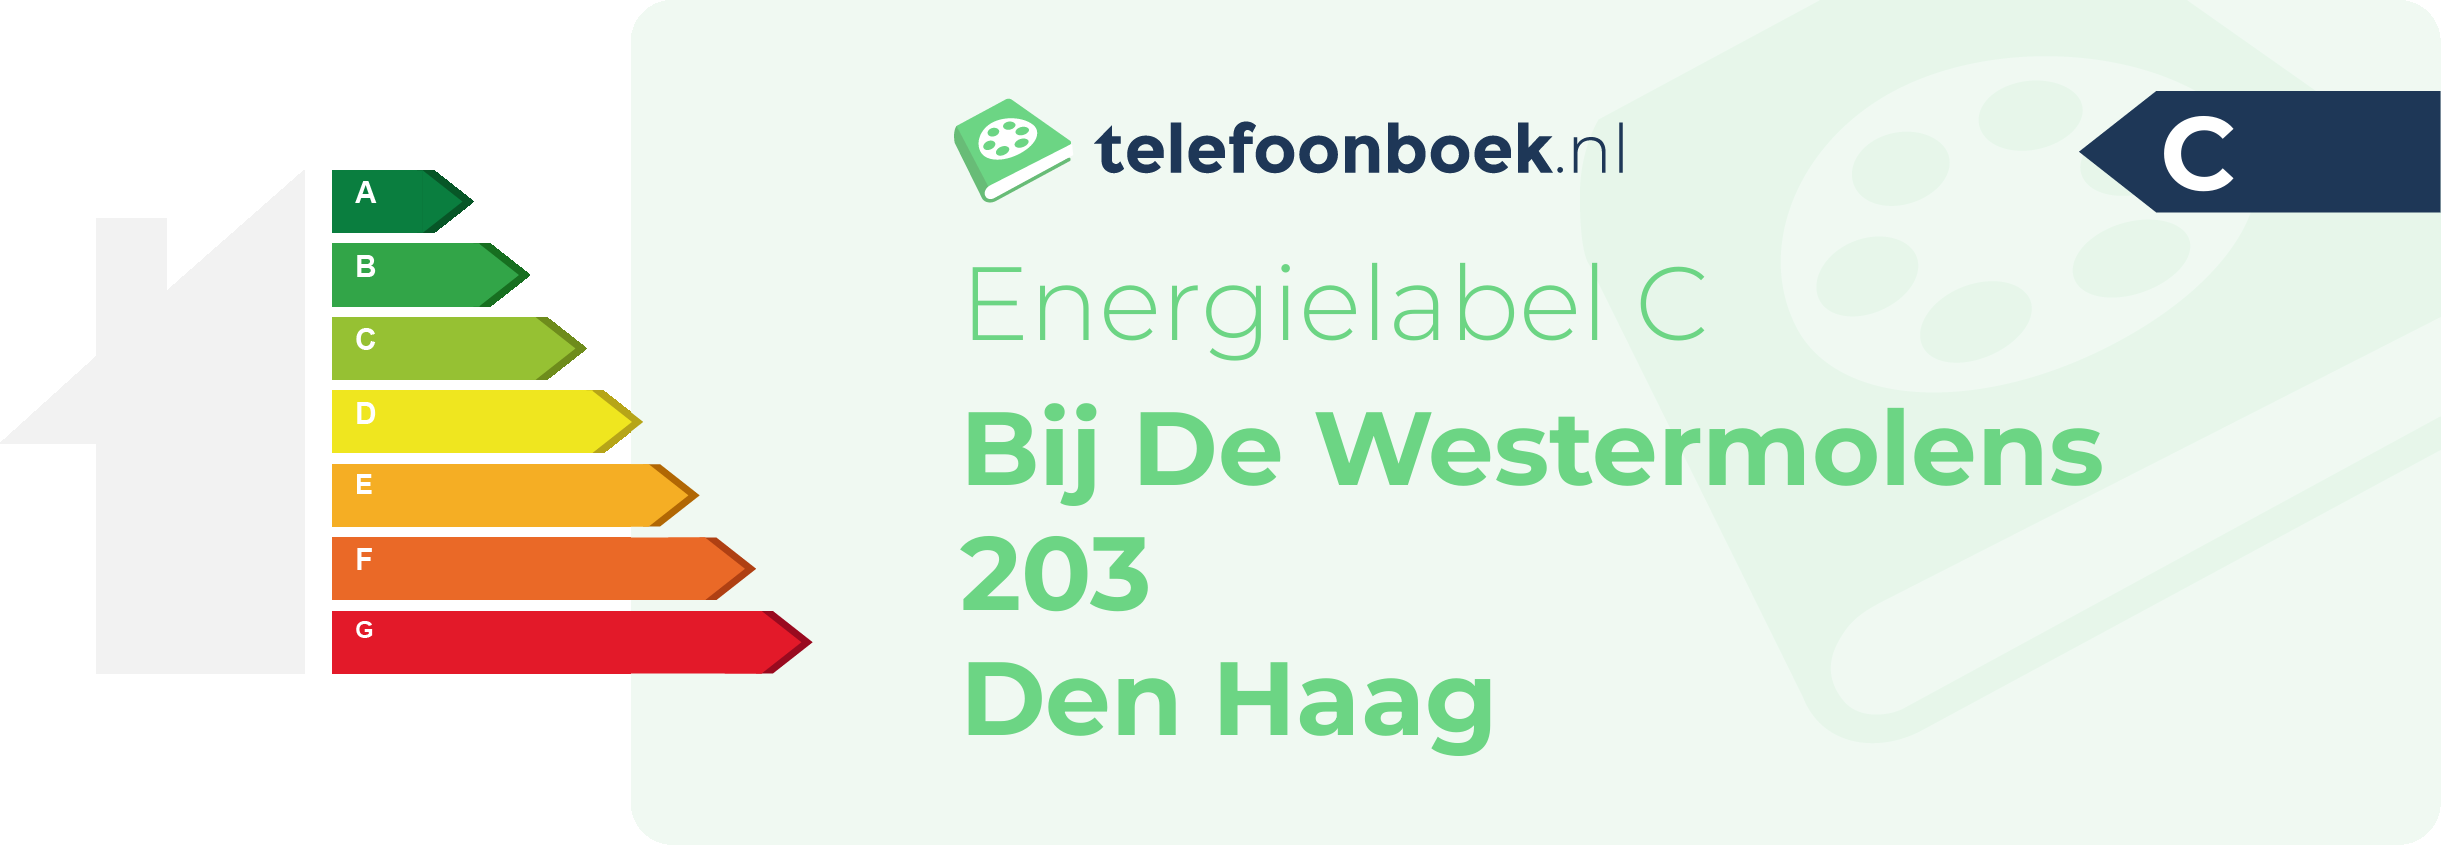 Energielabel Bij De Westermolens 203 Den Haag